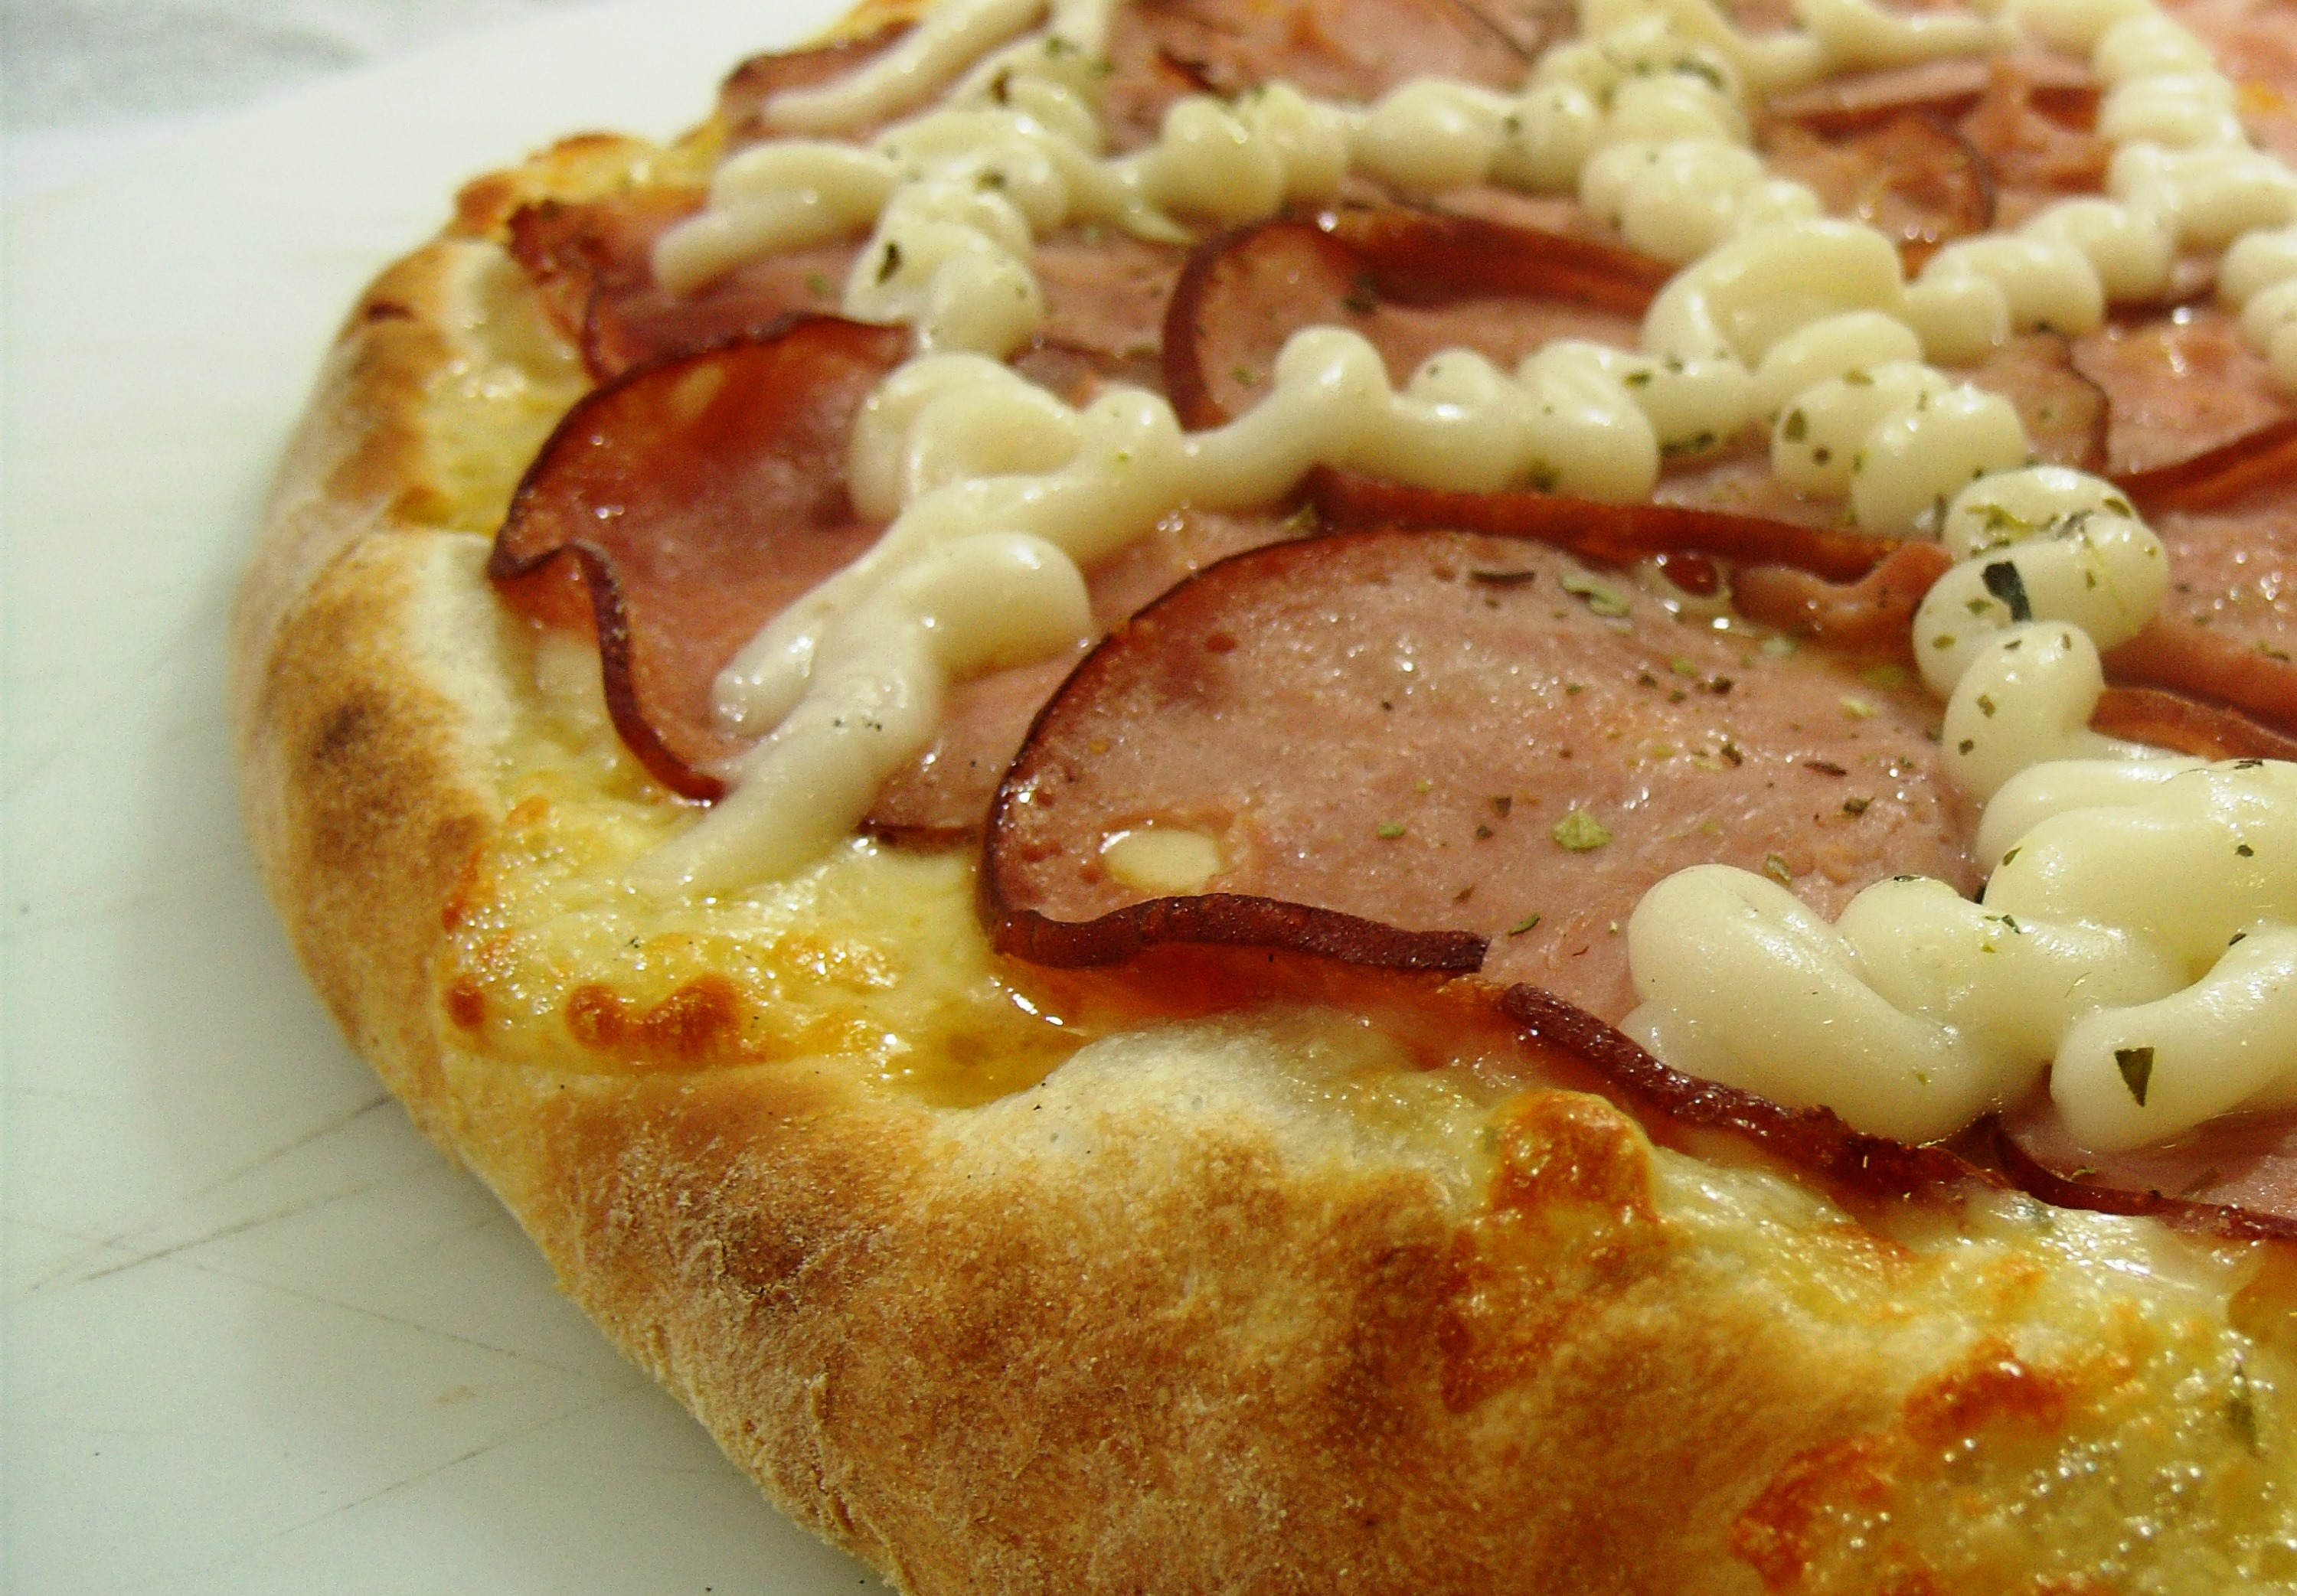 Dia da Pizza é com Catupiry®. – Catupiry